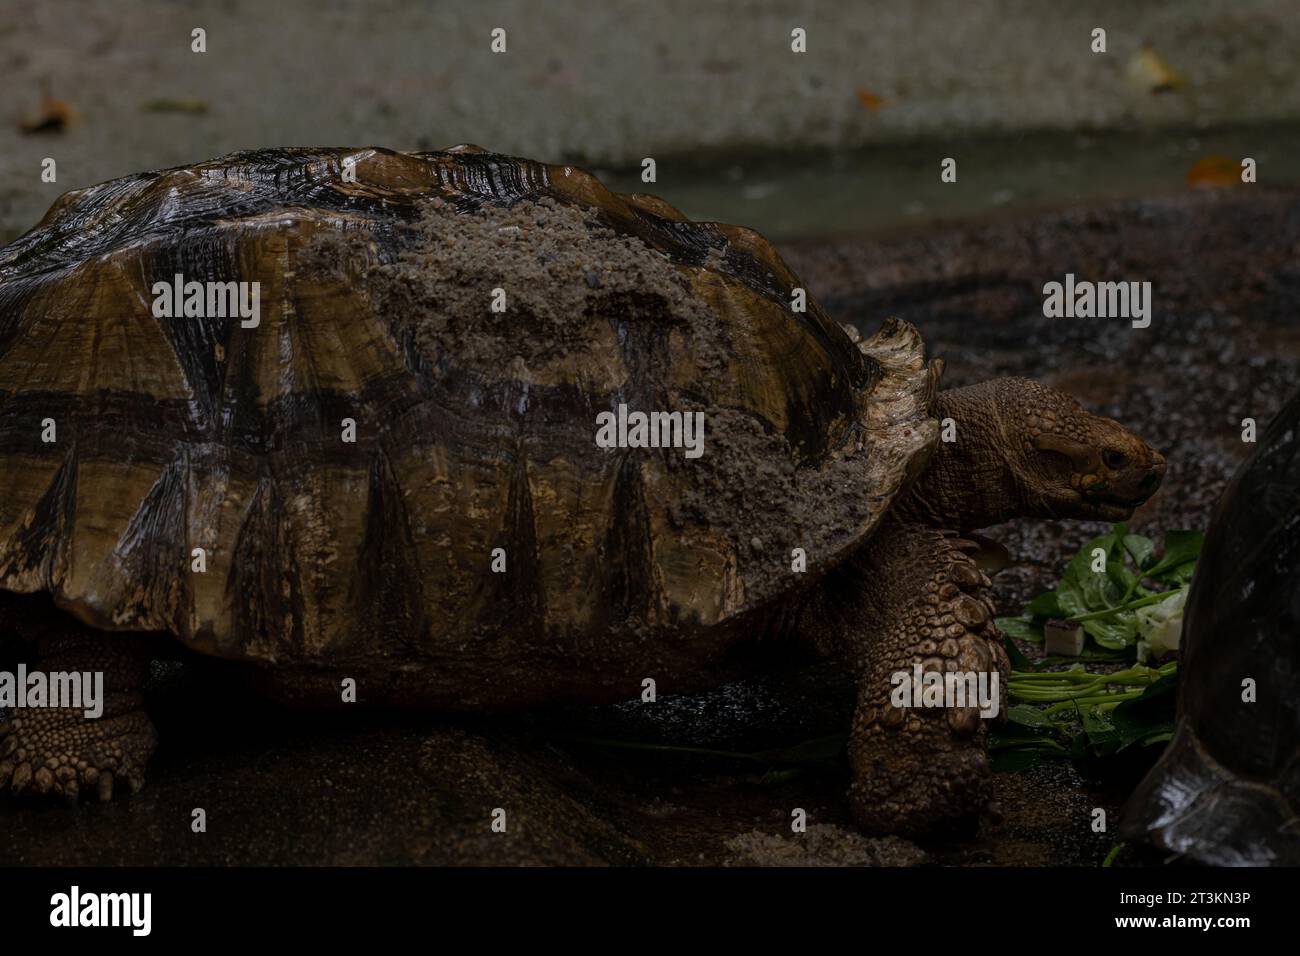 Zwei afrikanische Schildkröten, die während des Regens essen - Centrochelys sulcata, große Schildkröte aus afrikanischen Büschen, Wälder und Grasland, Langansee Stockfoto